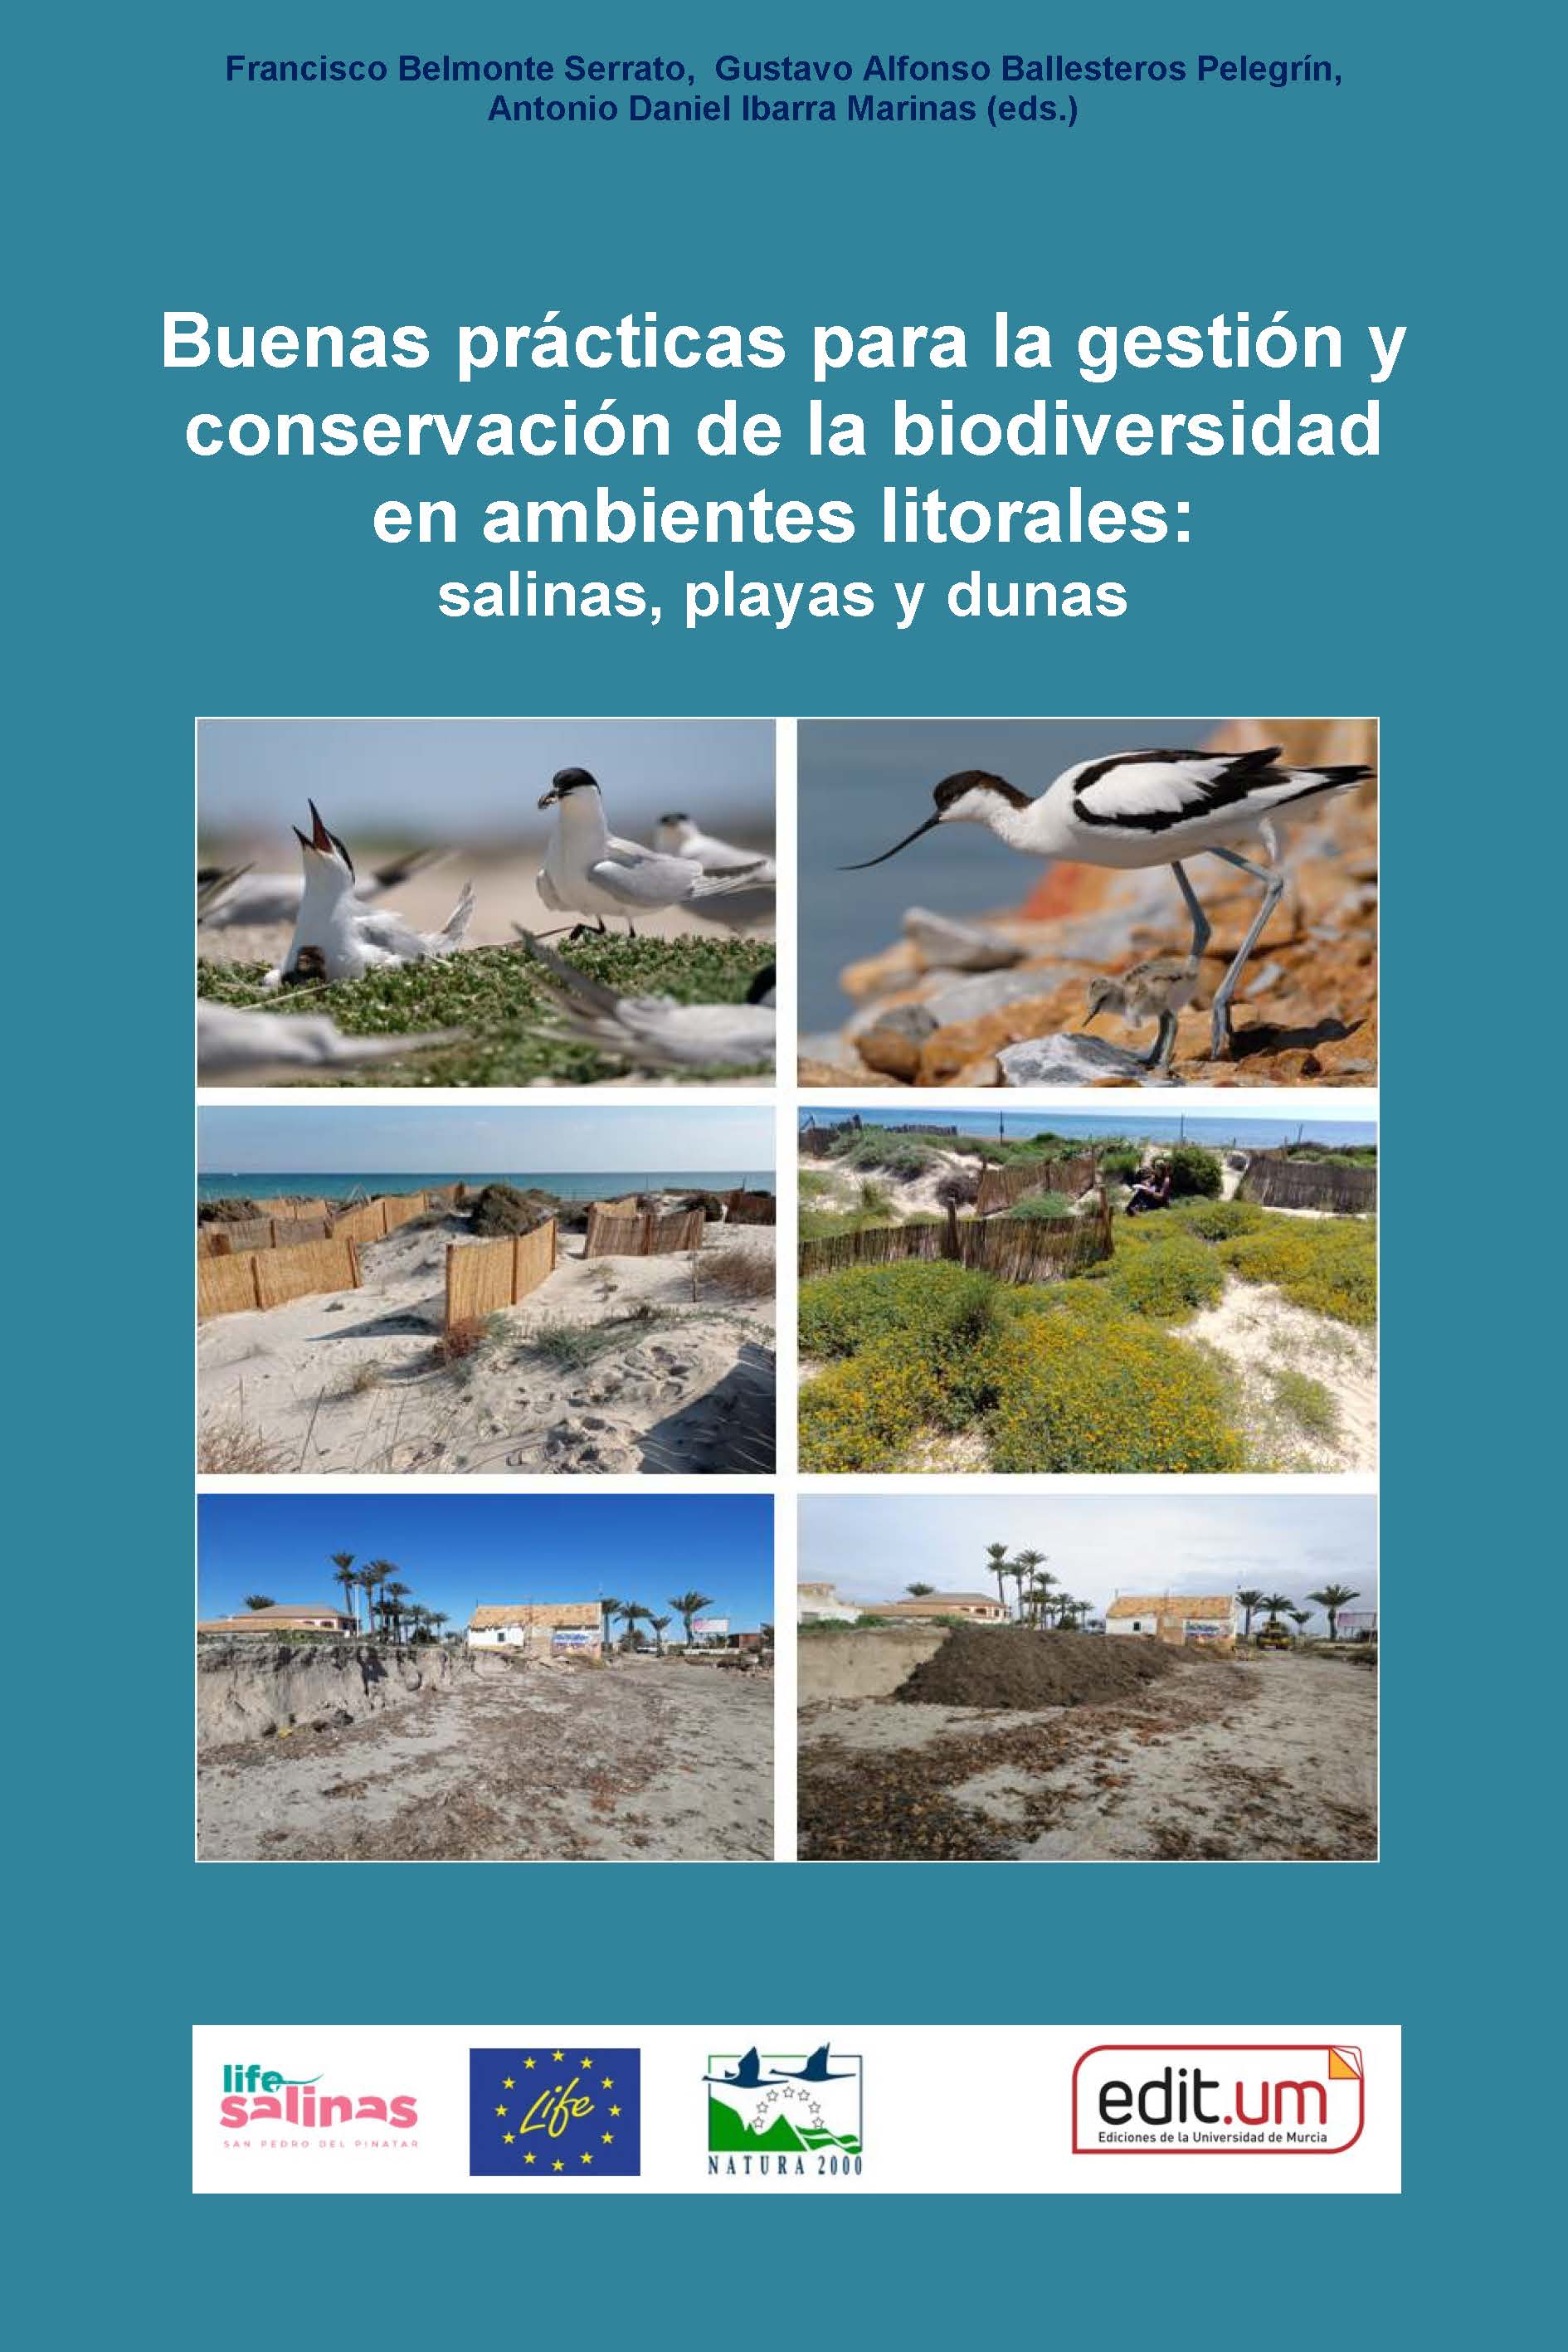 Imagen de portada del libro Buenas prácticas para la gestión y conservación de la biodiversidad en ambientes litorales